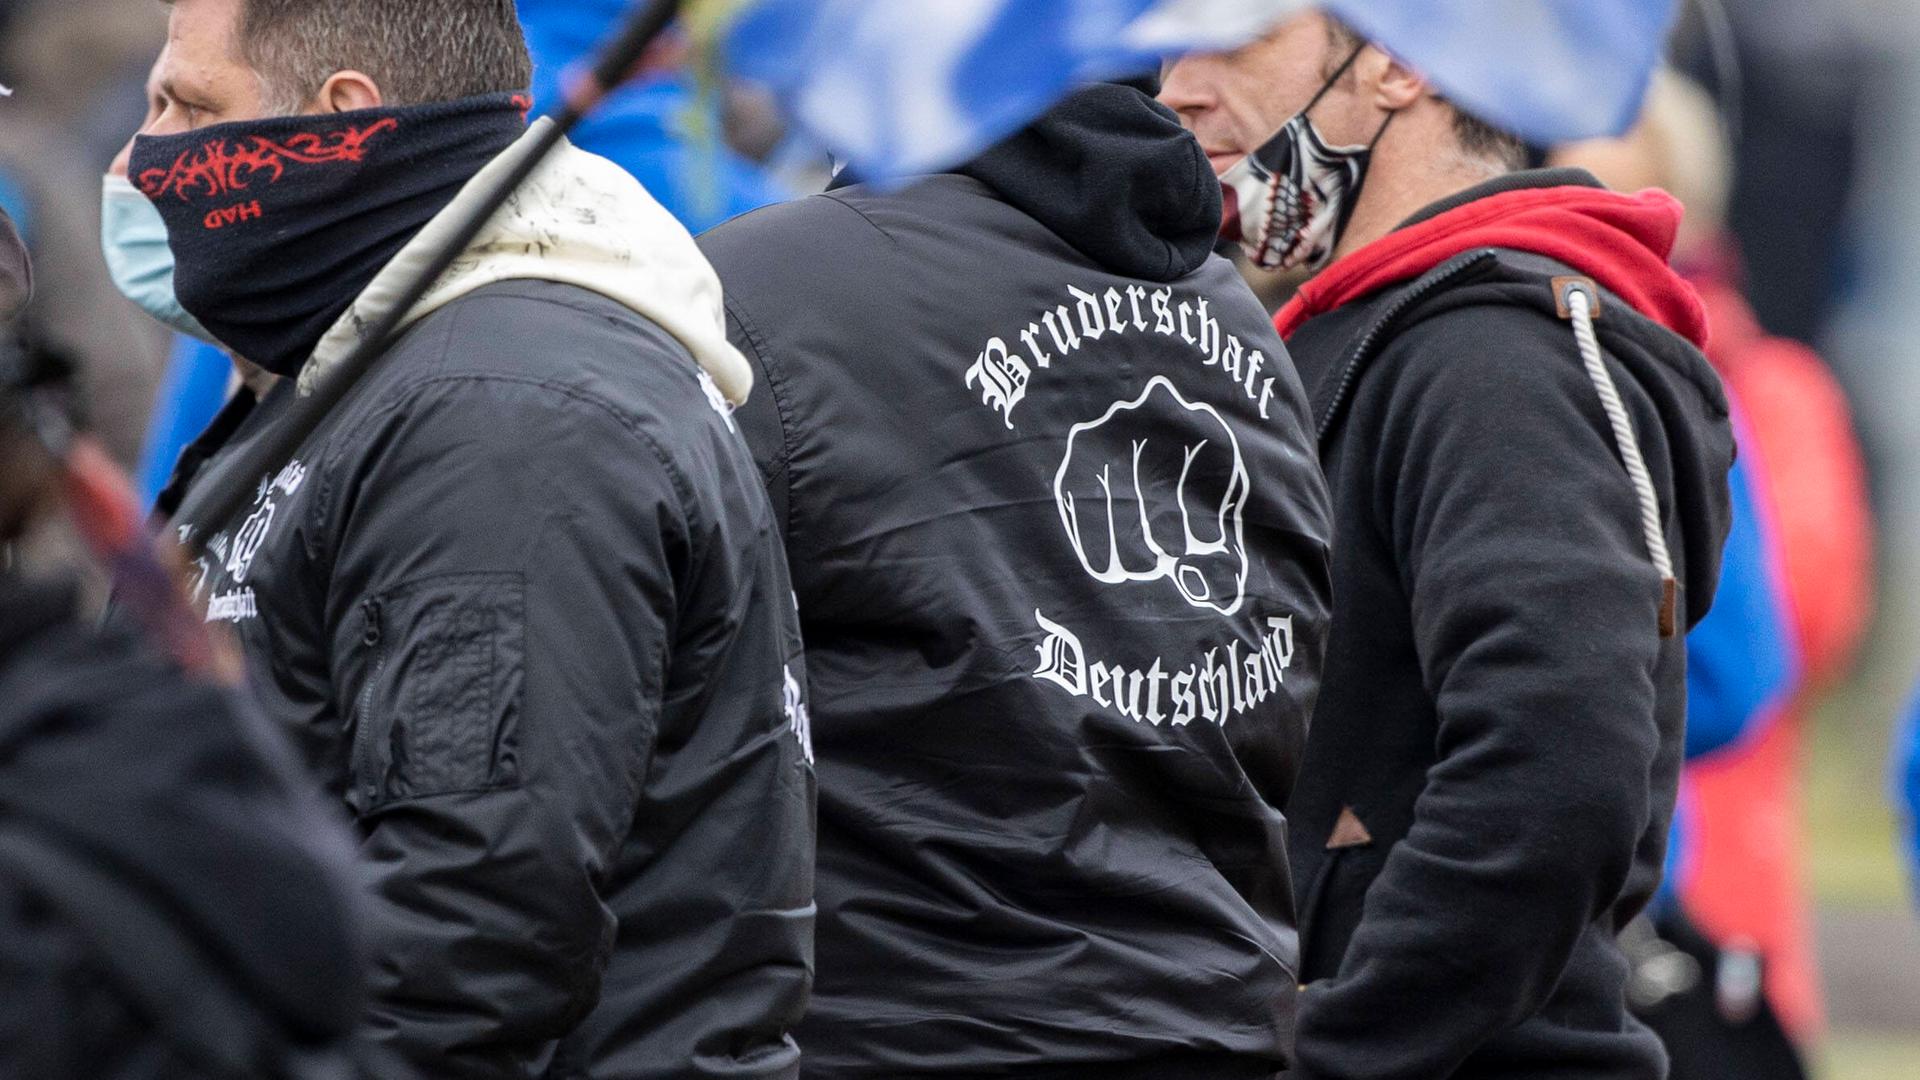 Rechtsextreme bei einer Querdenker-Demo. Einer trägt eine Jacke mit der Aufschrift Bruderschaft Deutschland.